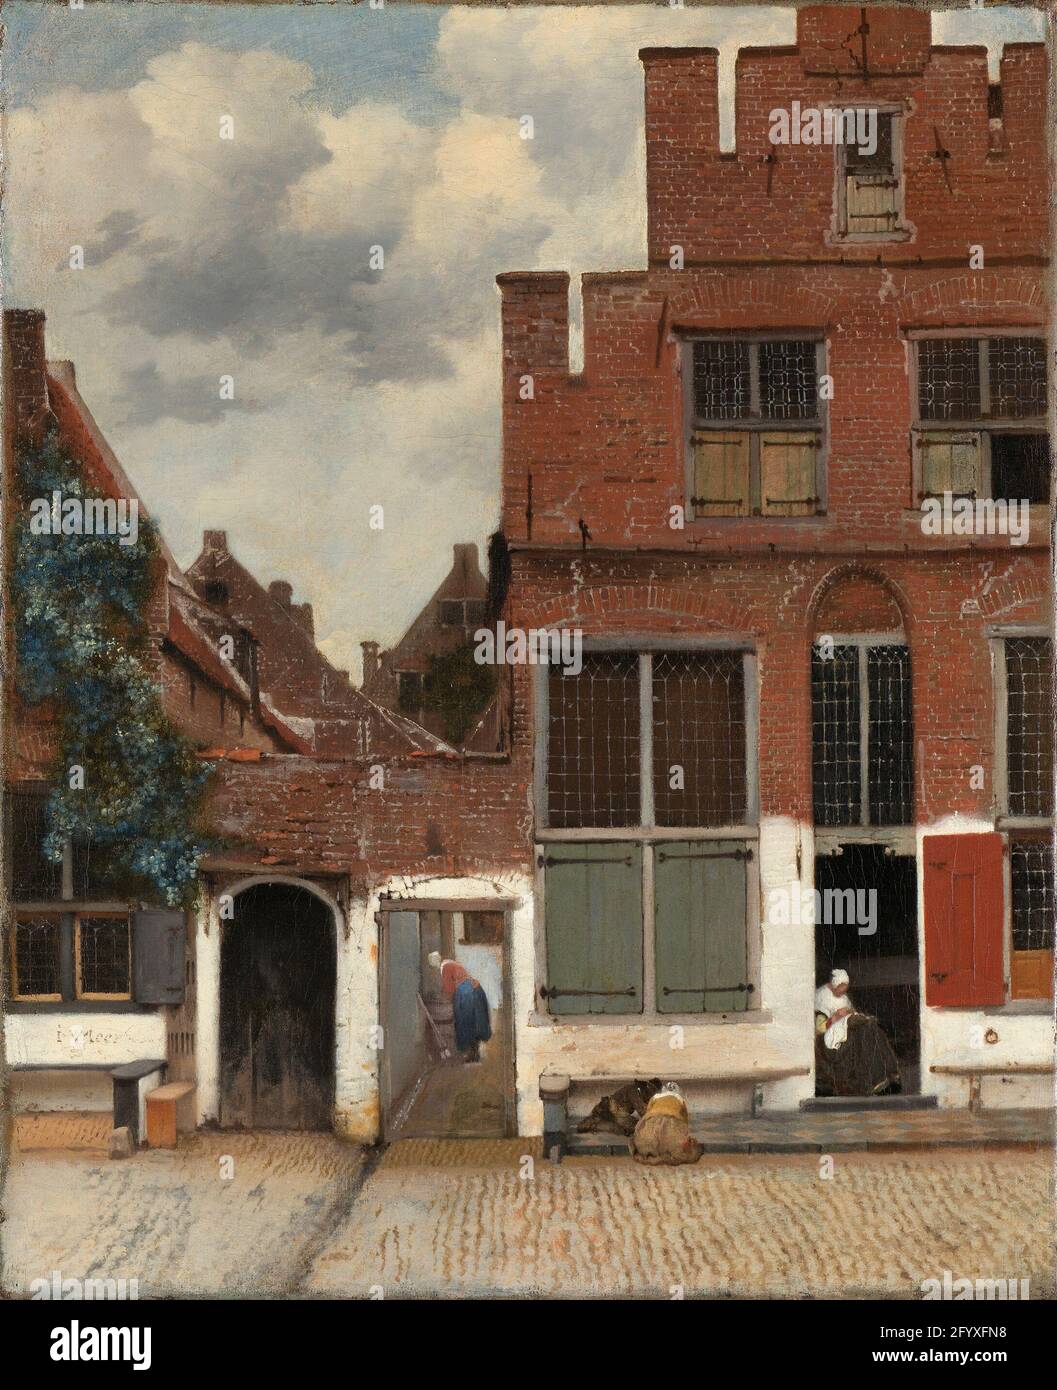 Blick auf die Häuser in Delft, bekannt als die kleine Straße. Dies ist ein ungewöhnliches Gemälde in Vermeers Werk, das für seine Zeit als Porträt gewöhnlicher Häuser bemerkenswert ist. Die Komposition ist ebenso spannend wie ausgeglichen. Die alten Mauern mit ihren Ziegeln, Weißbruch und Rissen sind fast greifbar. Der Standort ist Vlamingstraat 40–42 in Delft. Vermeers Tante Ariaentgen Claes wohnte mit ihren Kindern von etwa 1645 bis zu ihrem Tod im Jahr 1670 im Haus rechts. Stockfoto